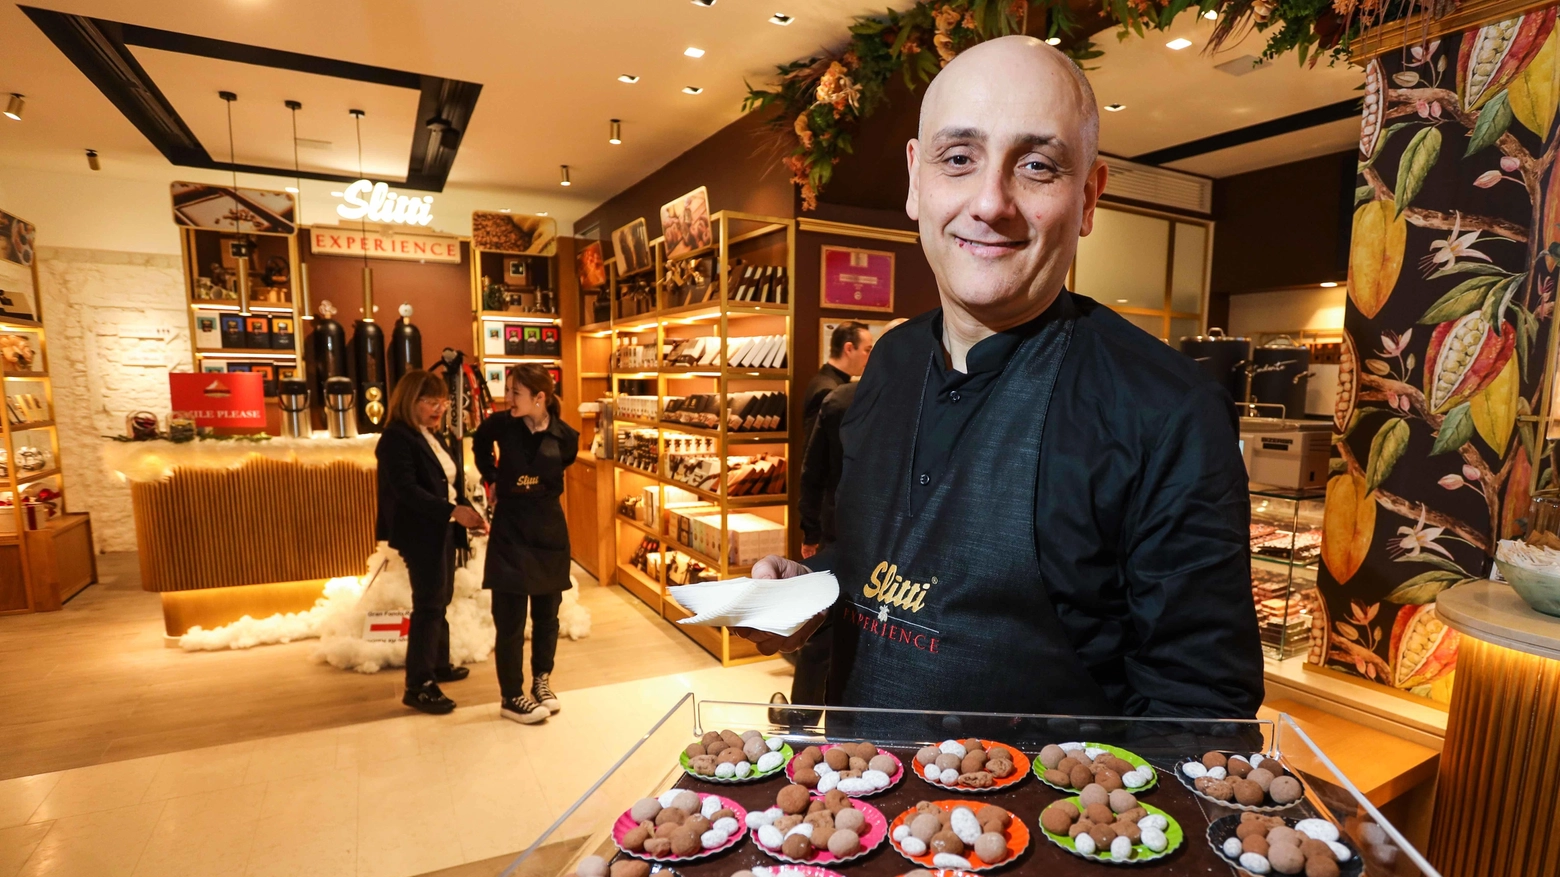 Arriva il maestro del cioccolato  Slitti sbarca in piazza dell’Olio  "Primo passo verso store all’estero"